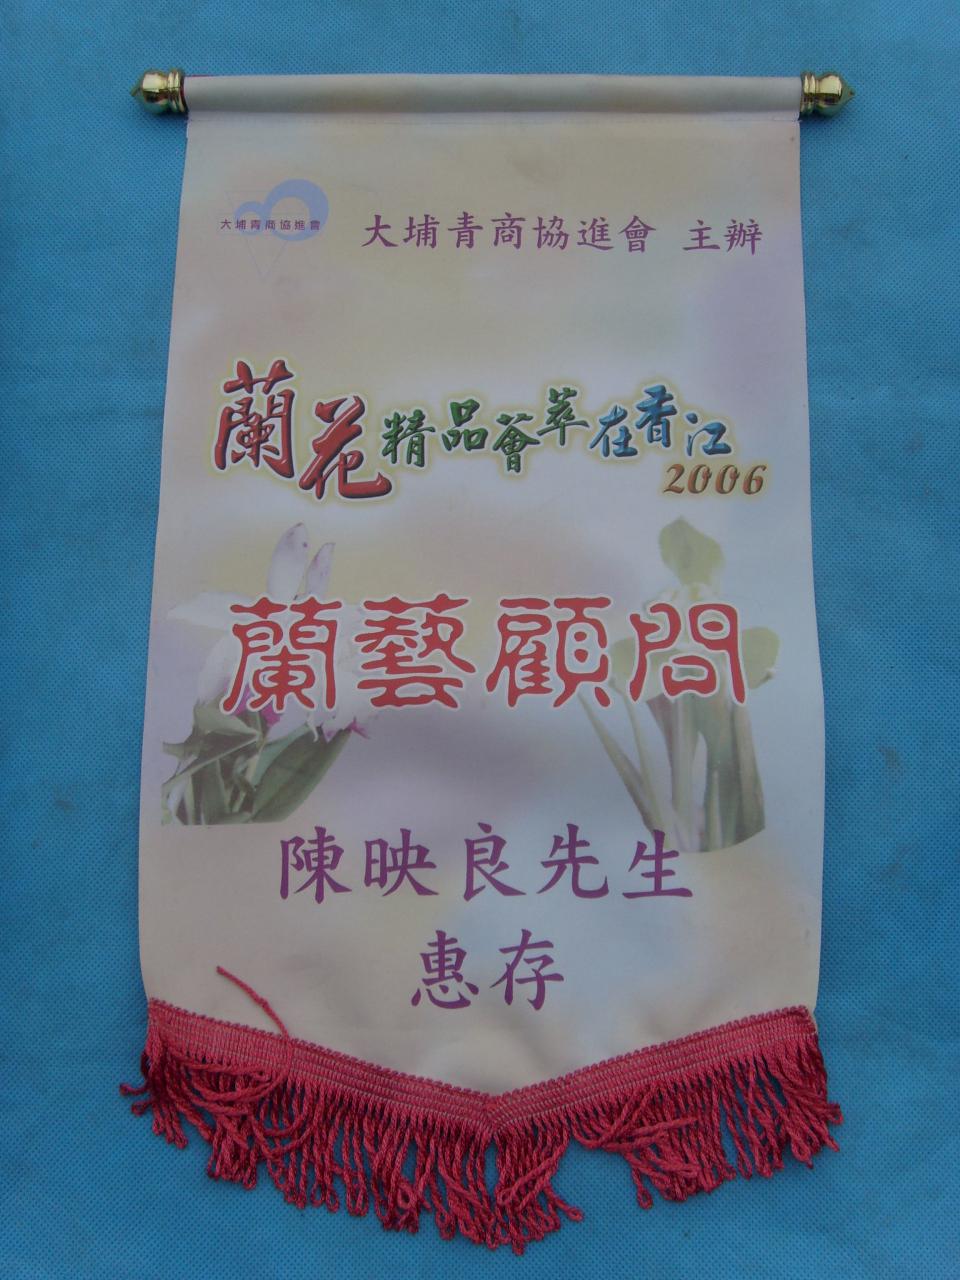 2006年兰花精品荟萃在香江-兰艺顾问